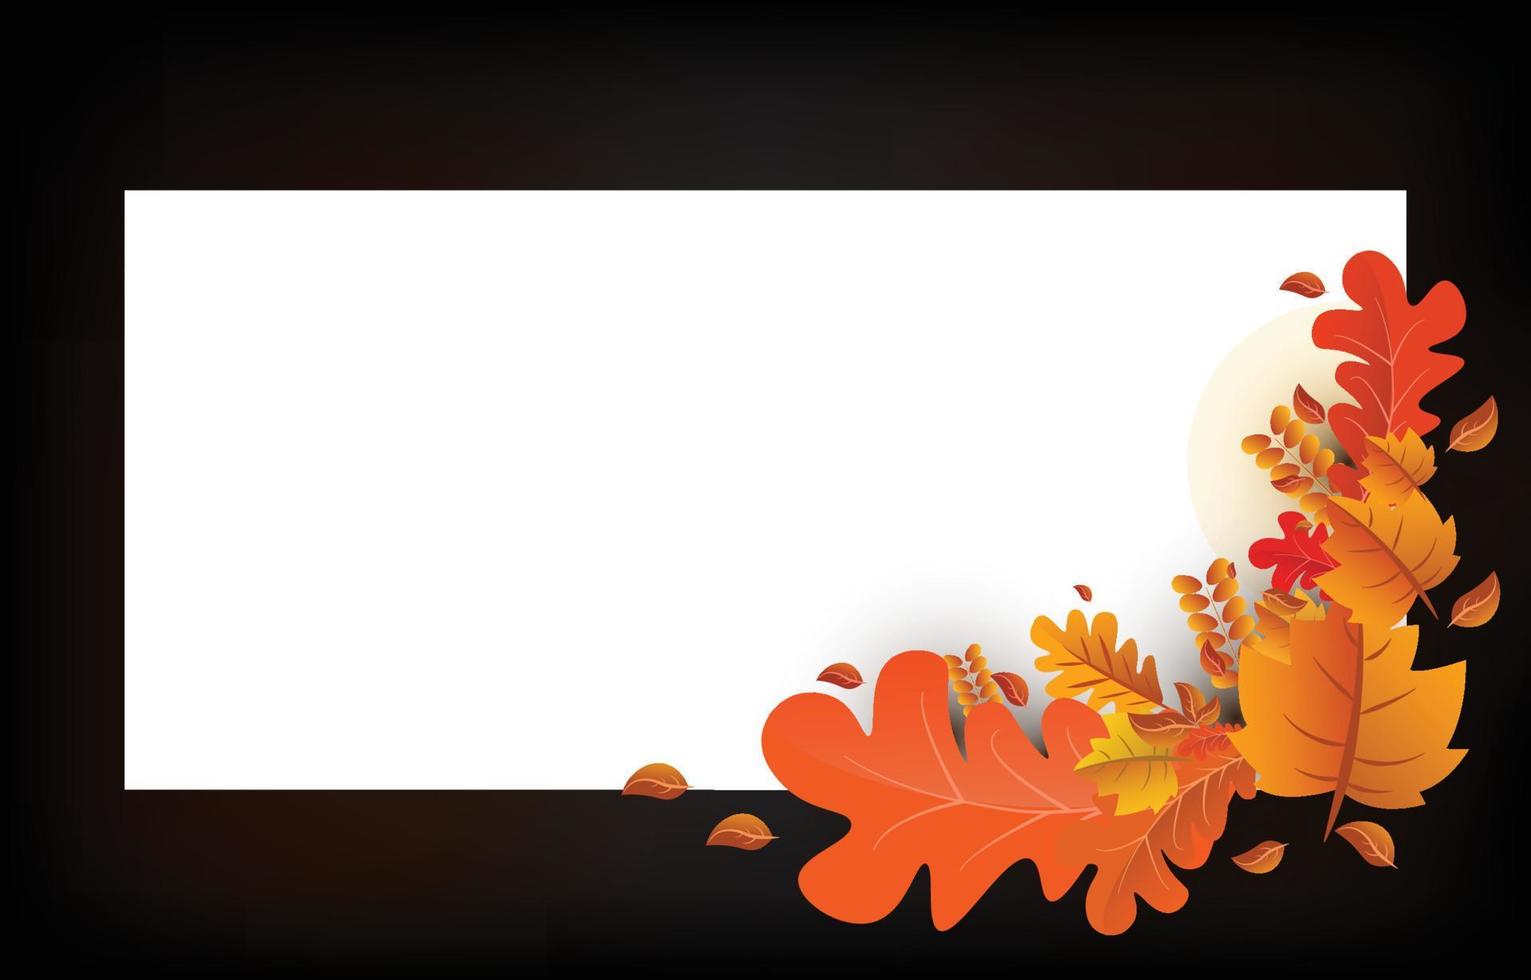 fondo de otoño con hojas de color amarillo dorado con marcos cuadrados y letras con descuento. concepto de caída, para papel tapiz, postales, tarjetas de felicitación, páginas web, pancartas, ventas en línea. ilustración vectorial vector